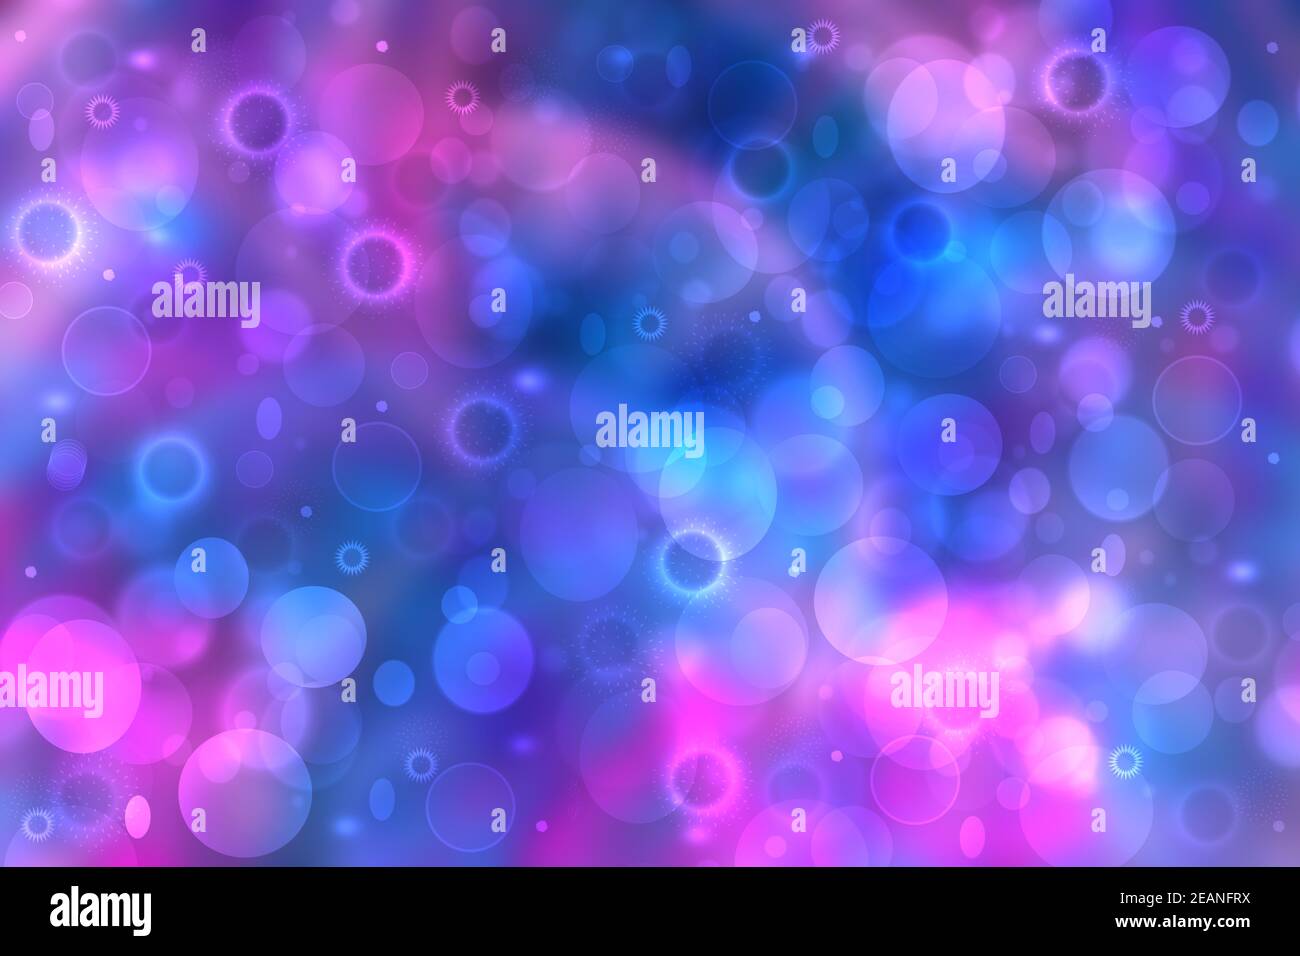 Abstrakt blau Verlauf rosa lila Hintergrund Textur mit Glitzer unfokussierte funkeln Bokeh Kreise und glühende kreisförmige Lichter. Schöne Kulisse mit Bokeh-Lichteffekt. Stockfoto